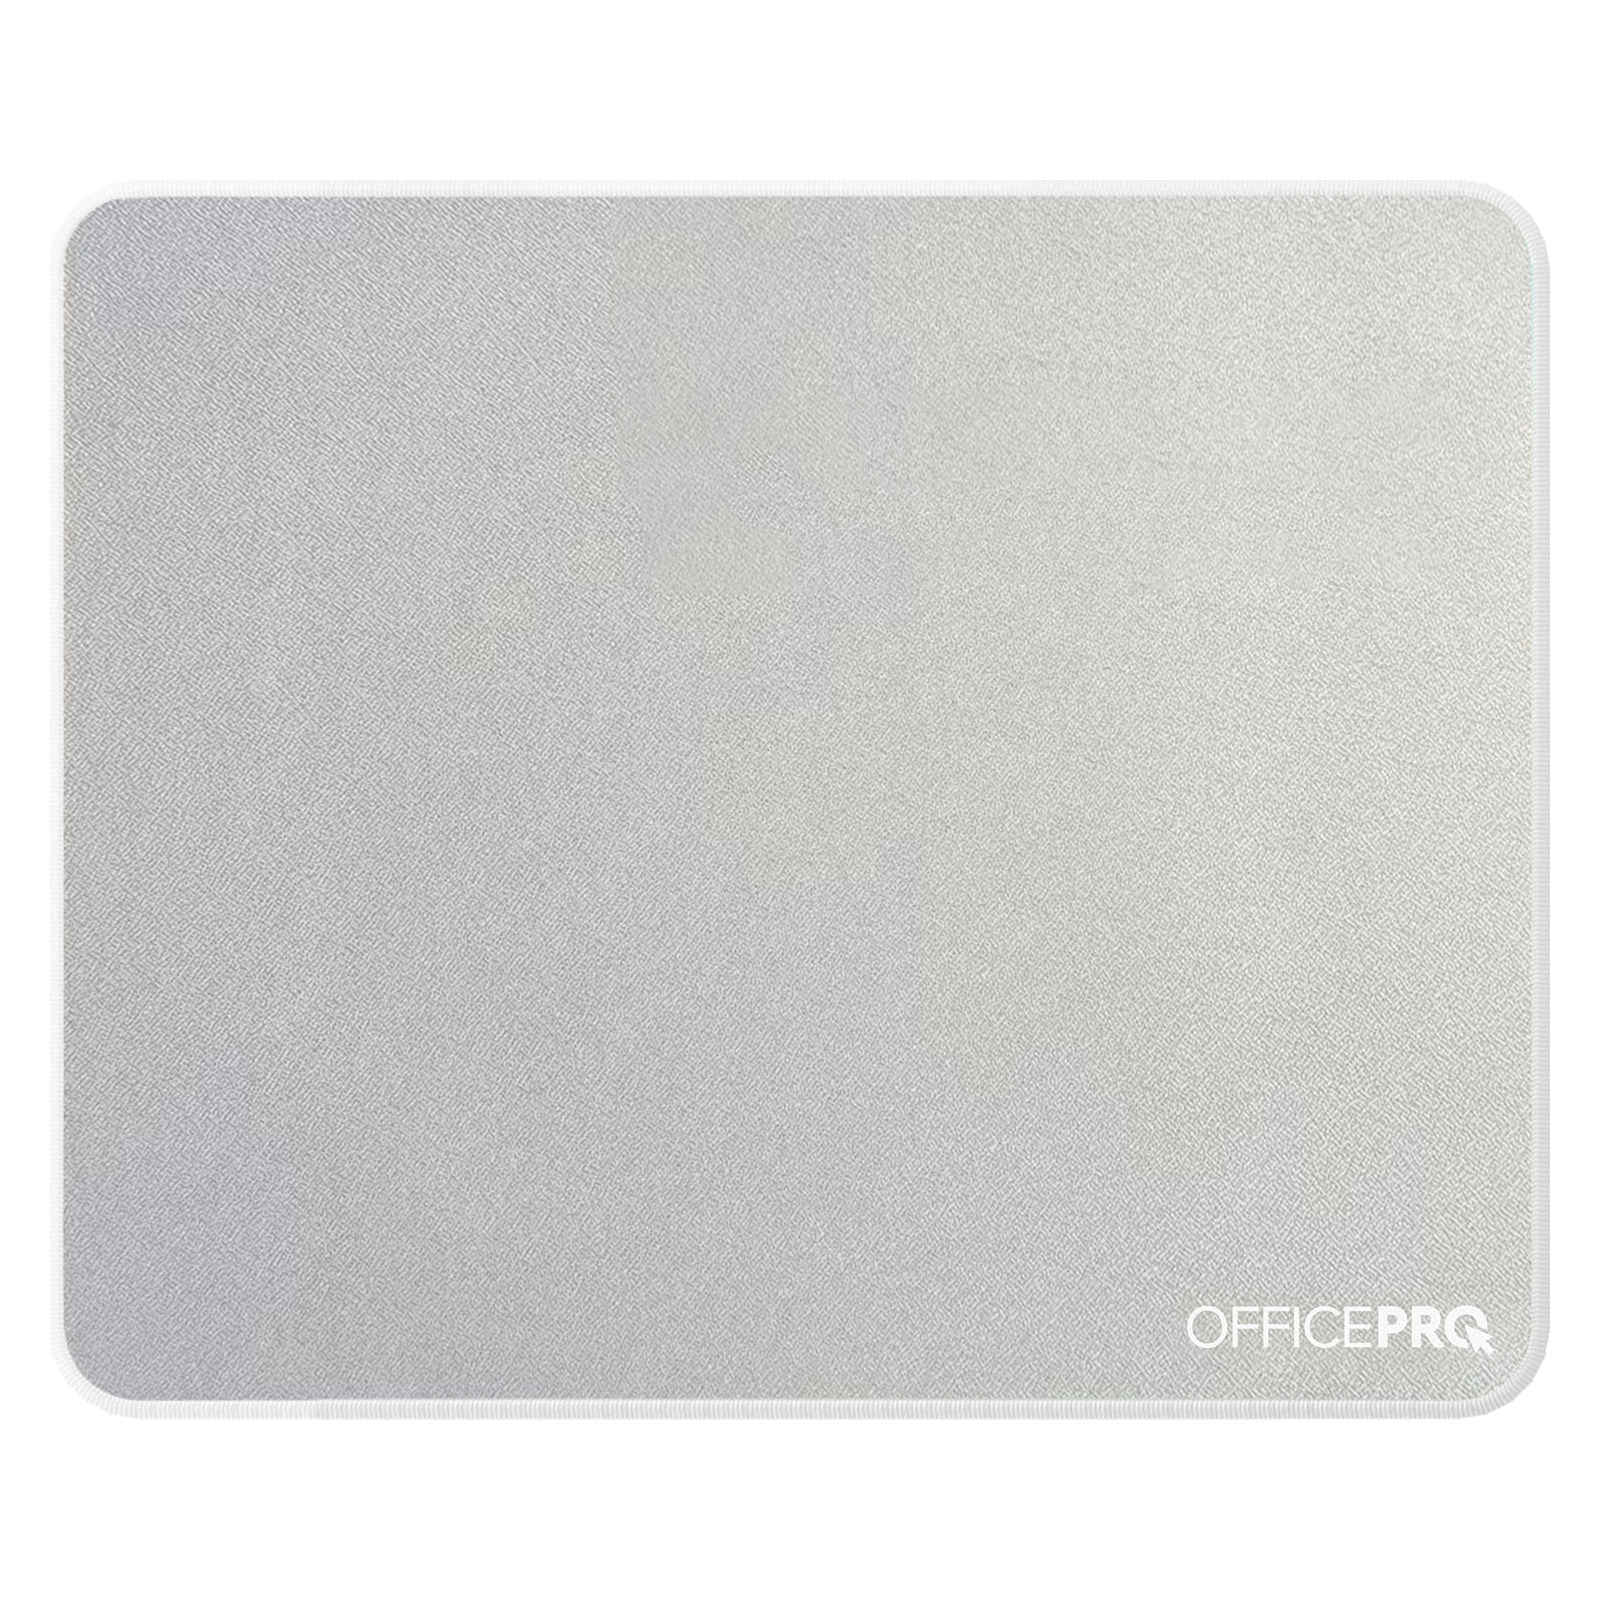 Коврик для мышки OfficePro MP102DG Dark Gray (MP102DG)